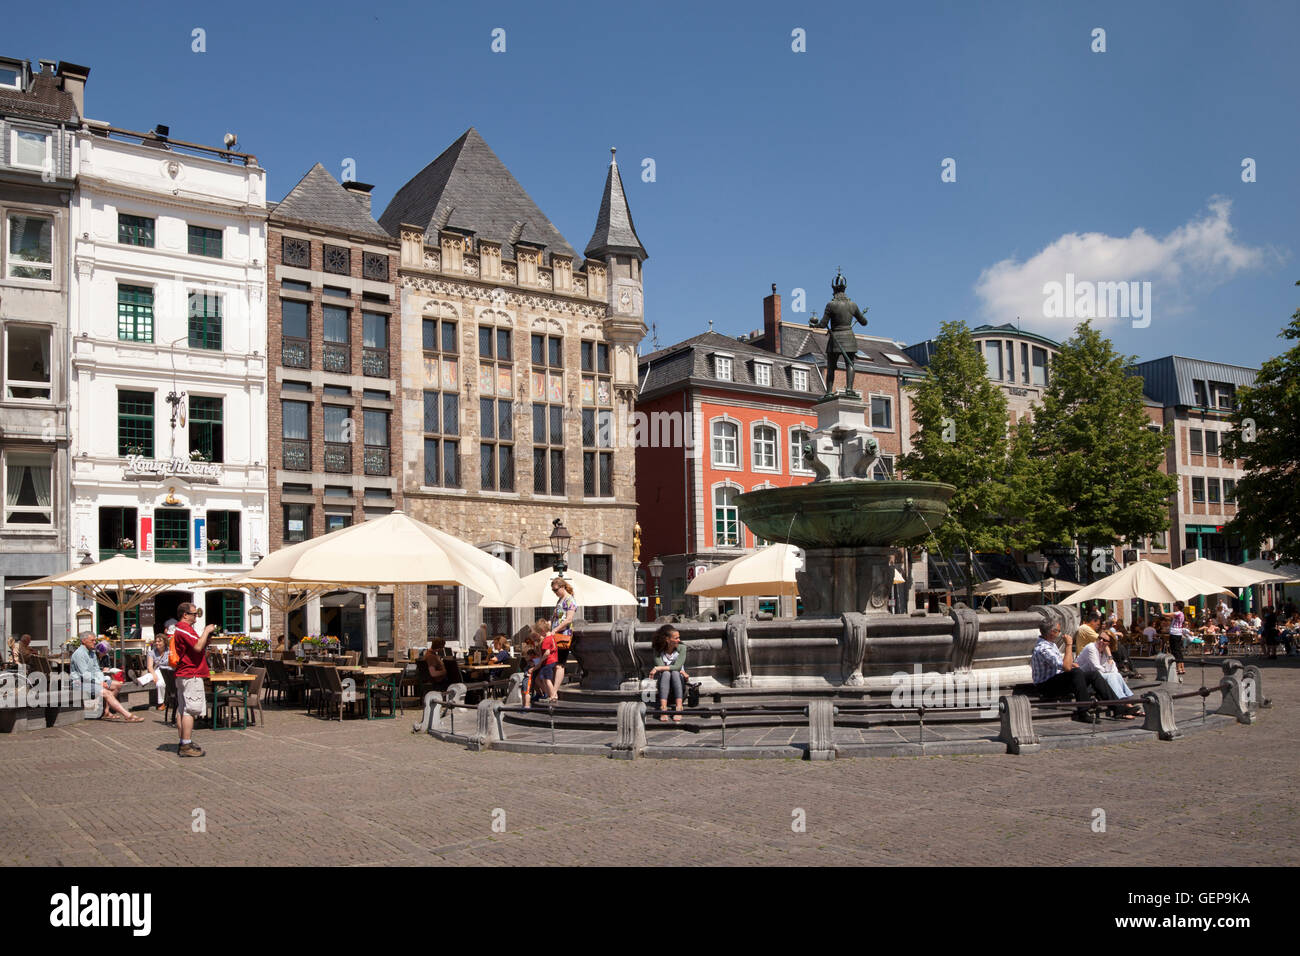 Marketplace, Aachen Stock Photo